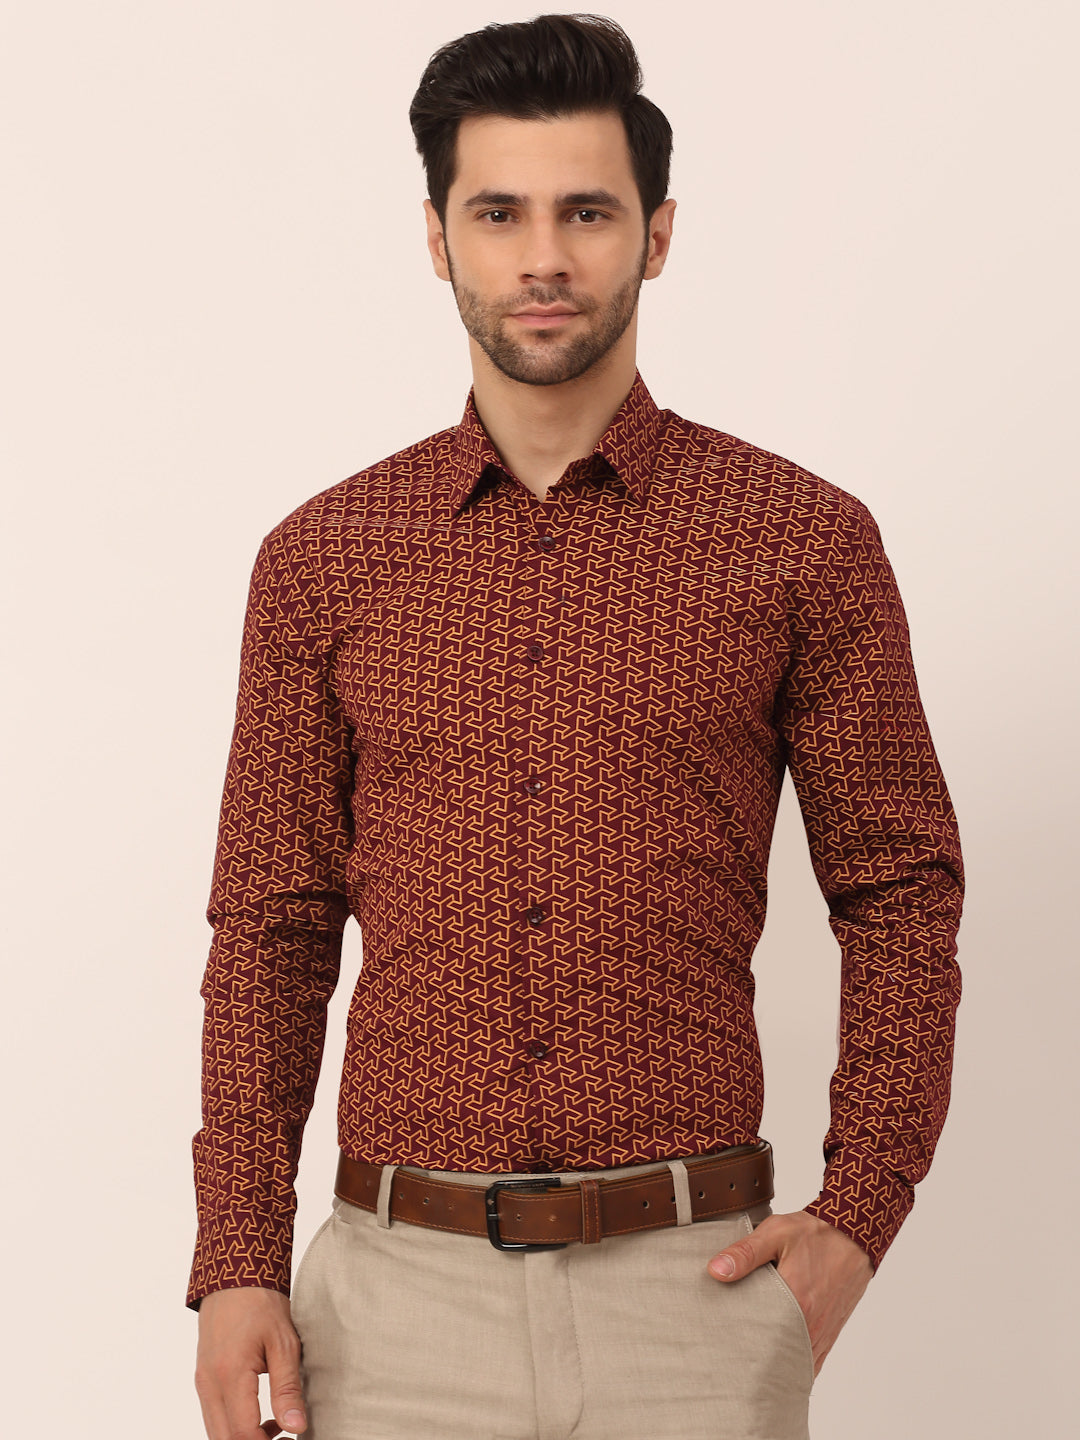 Men's  Cotton Printed Formal Shirts ( SF 821Brown ) - Jainish